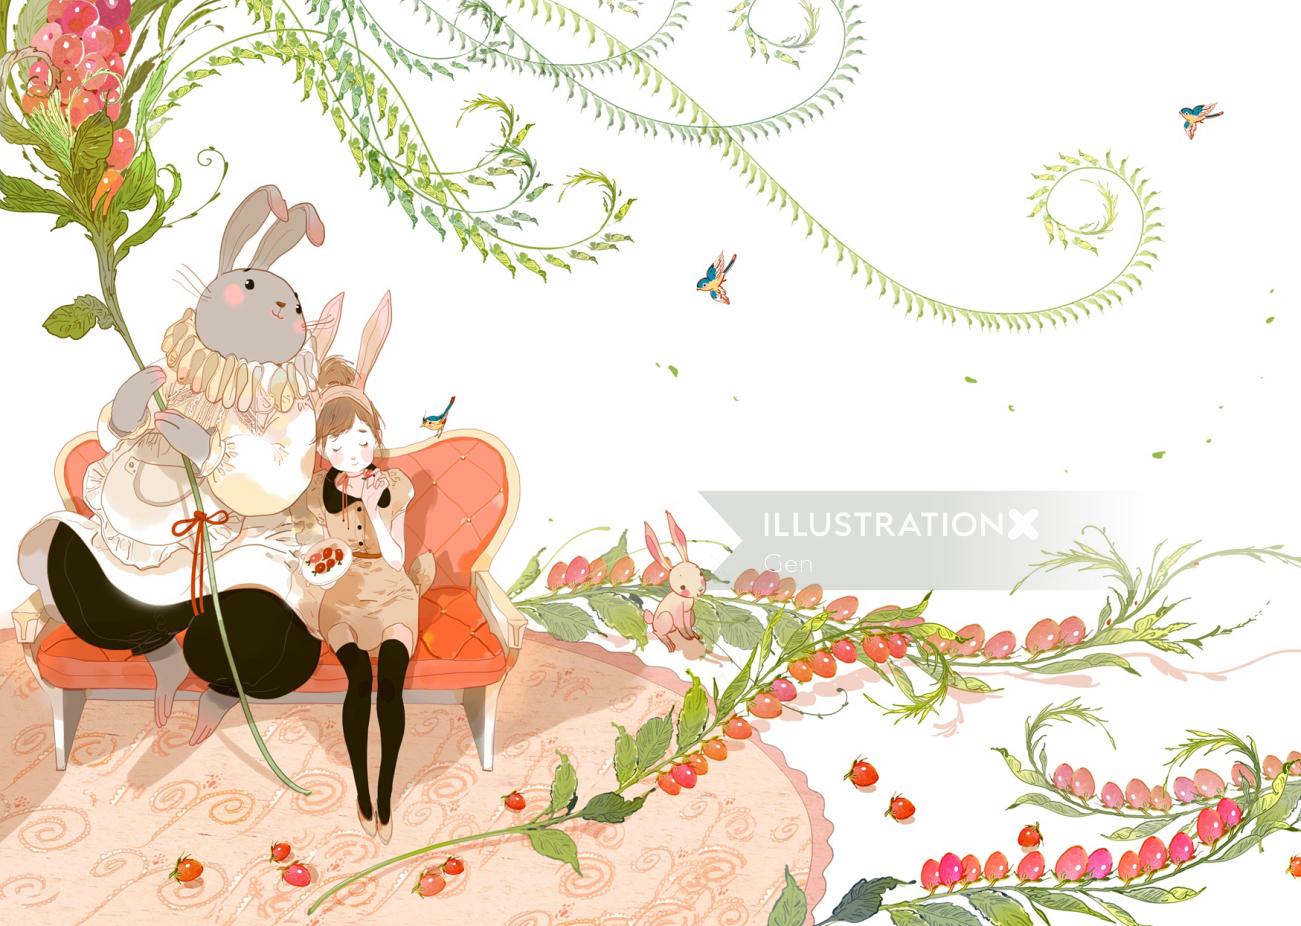 ウサギと少女の現代的なイラスト